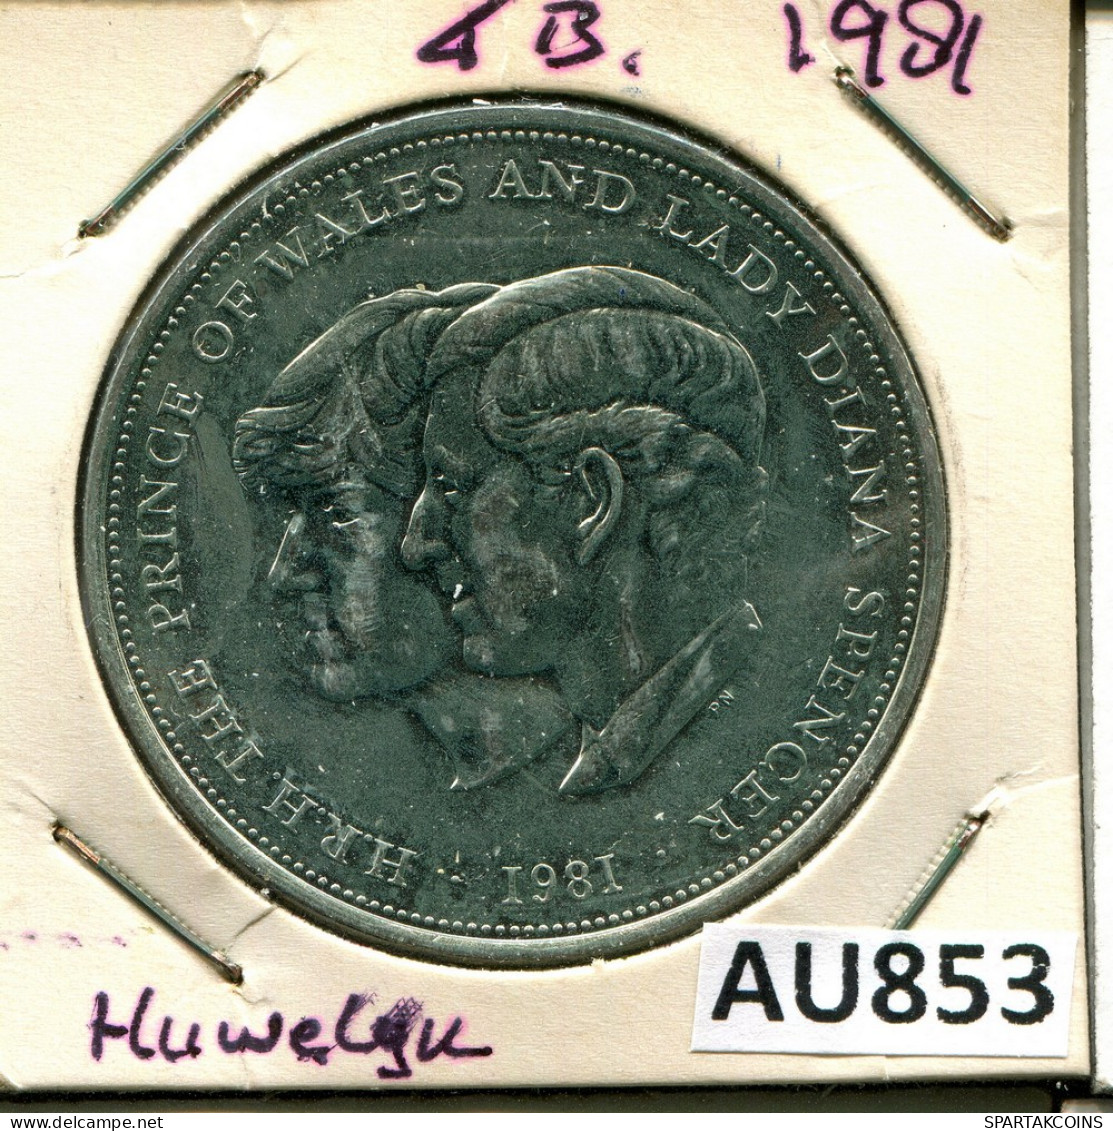 25 NEW PENCE 1981 UK GROßBRITANNIEN GREAT BRITAIN Münze #AU853.D - 25 New Pence